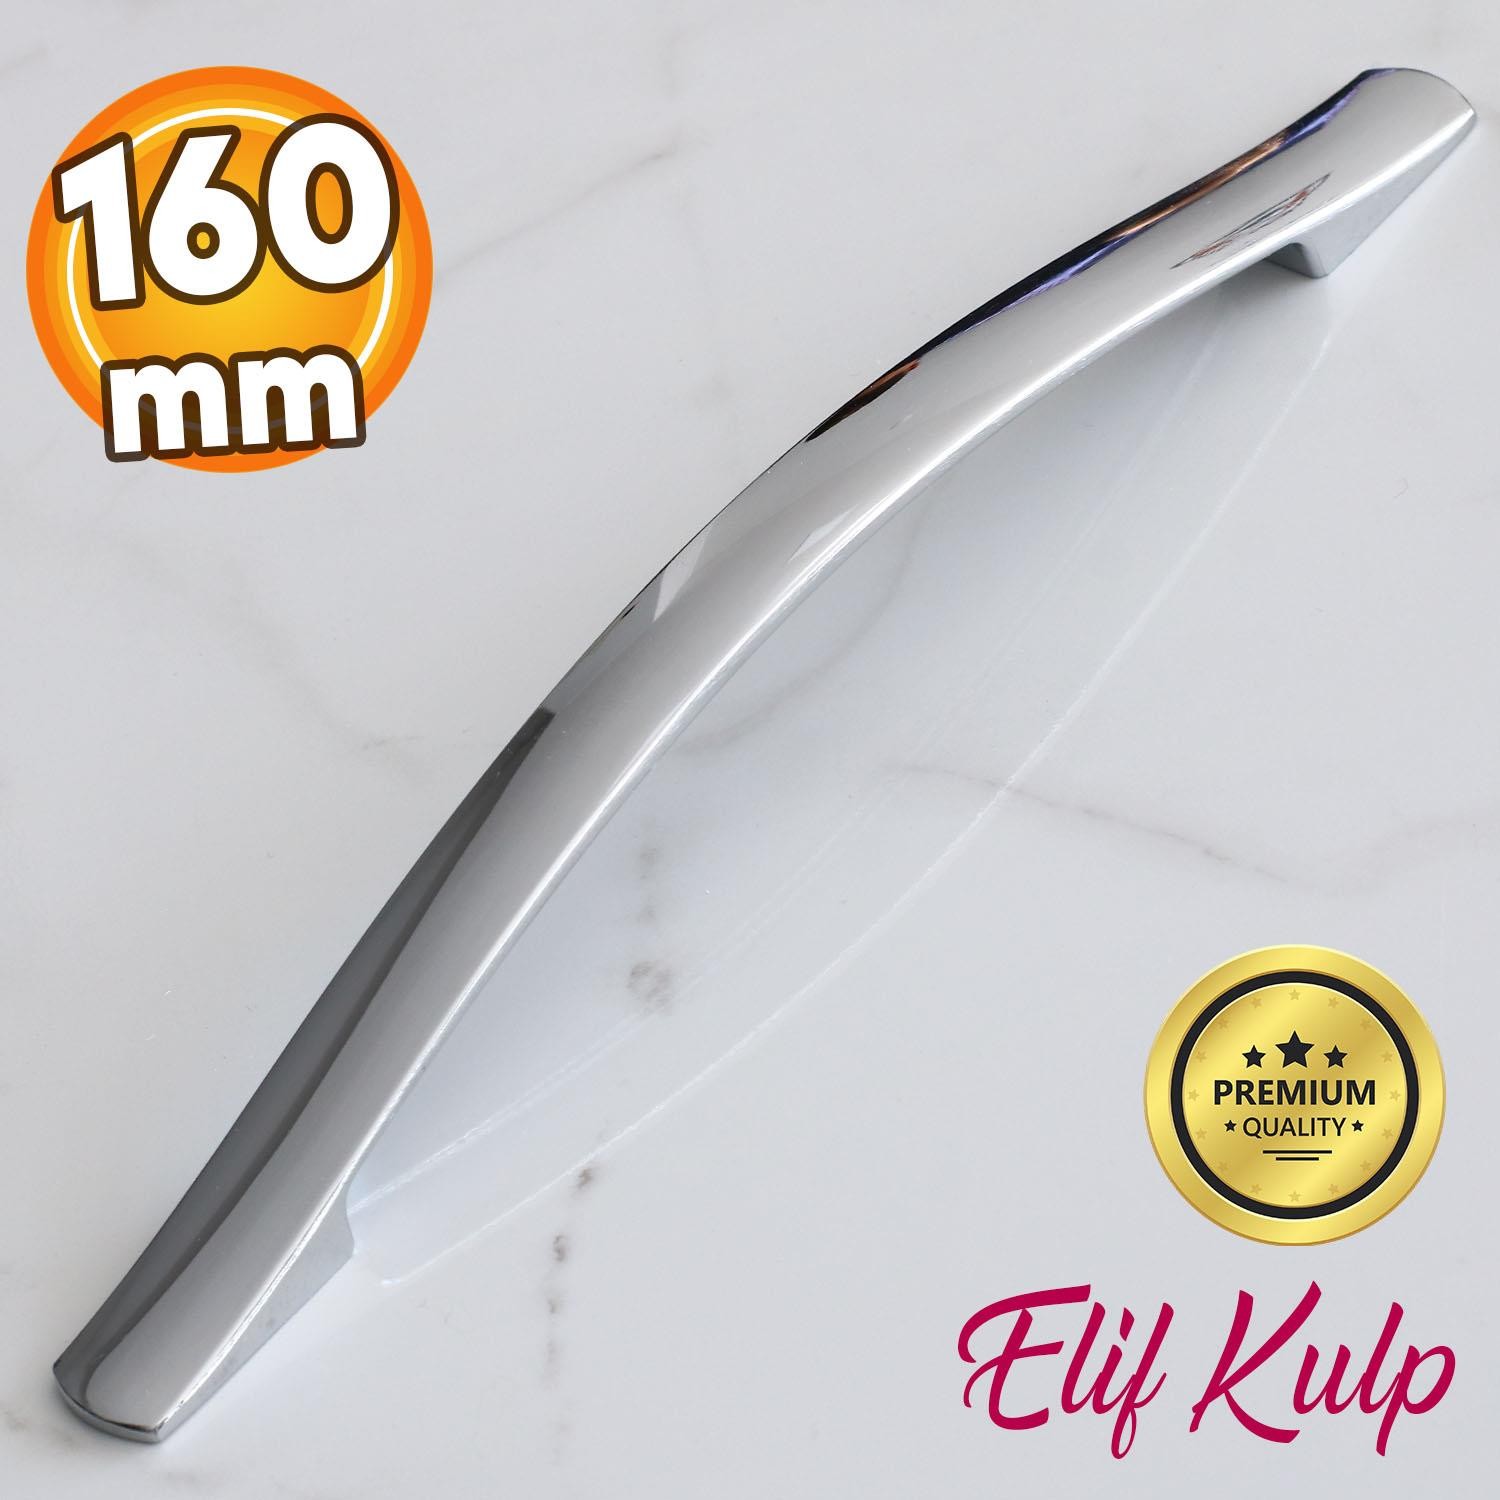 Elif Krom Metal Kulp 160 mm-16 cm Mobilya Çekmece Mutfak Dolabı Dolap Kapak Kulpları Kulbu Kulpu